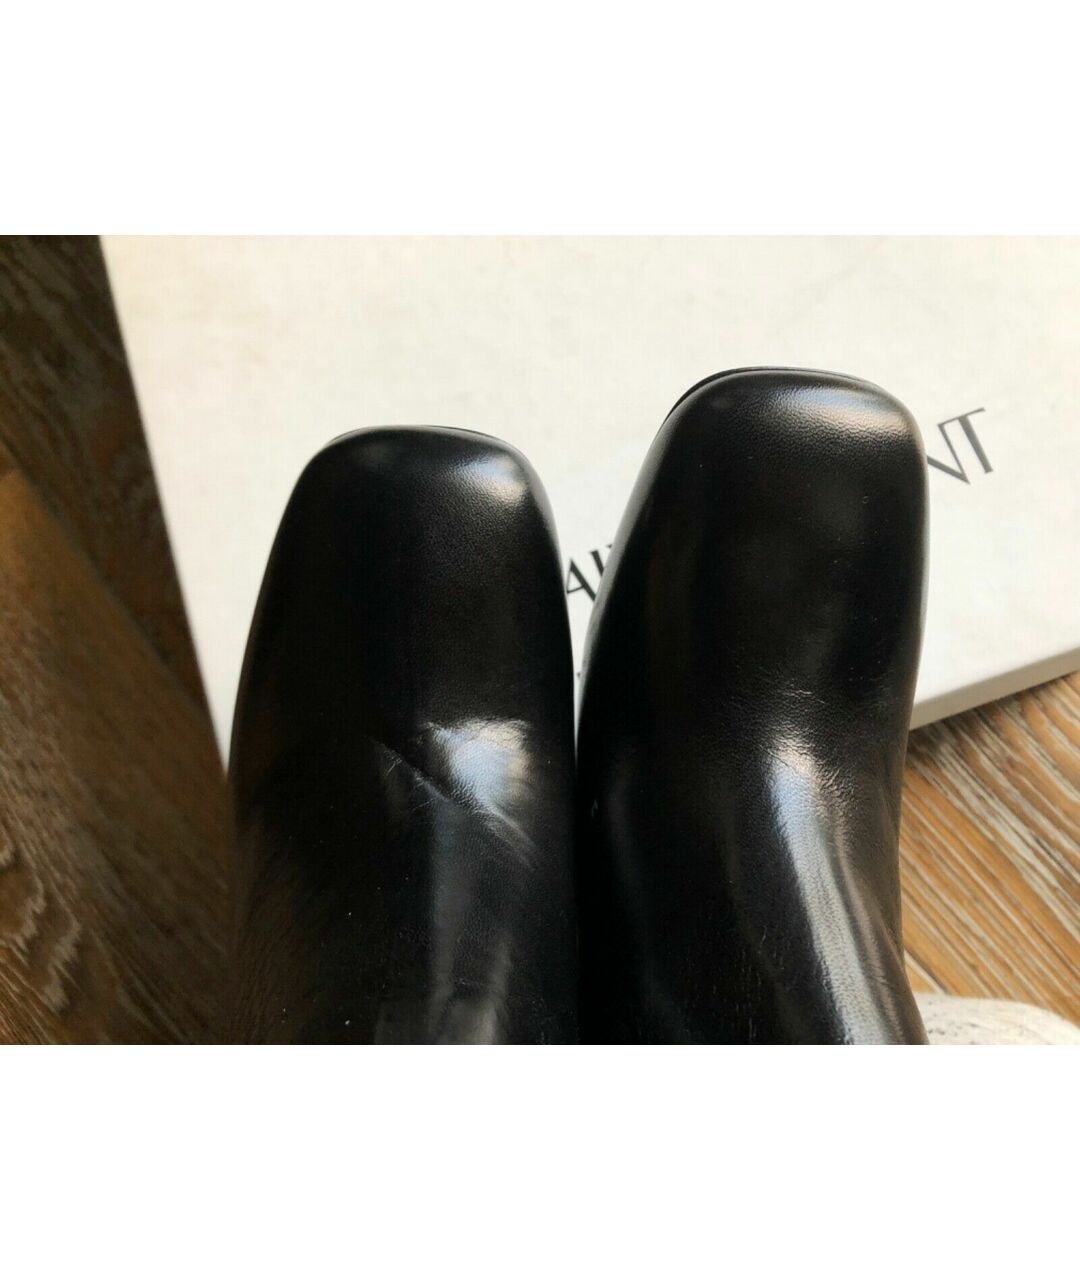 SAINT LAURENT Черные кожаные ботфорты, фото 2